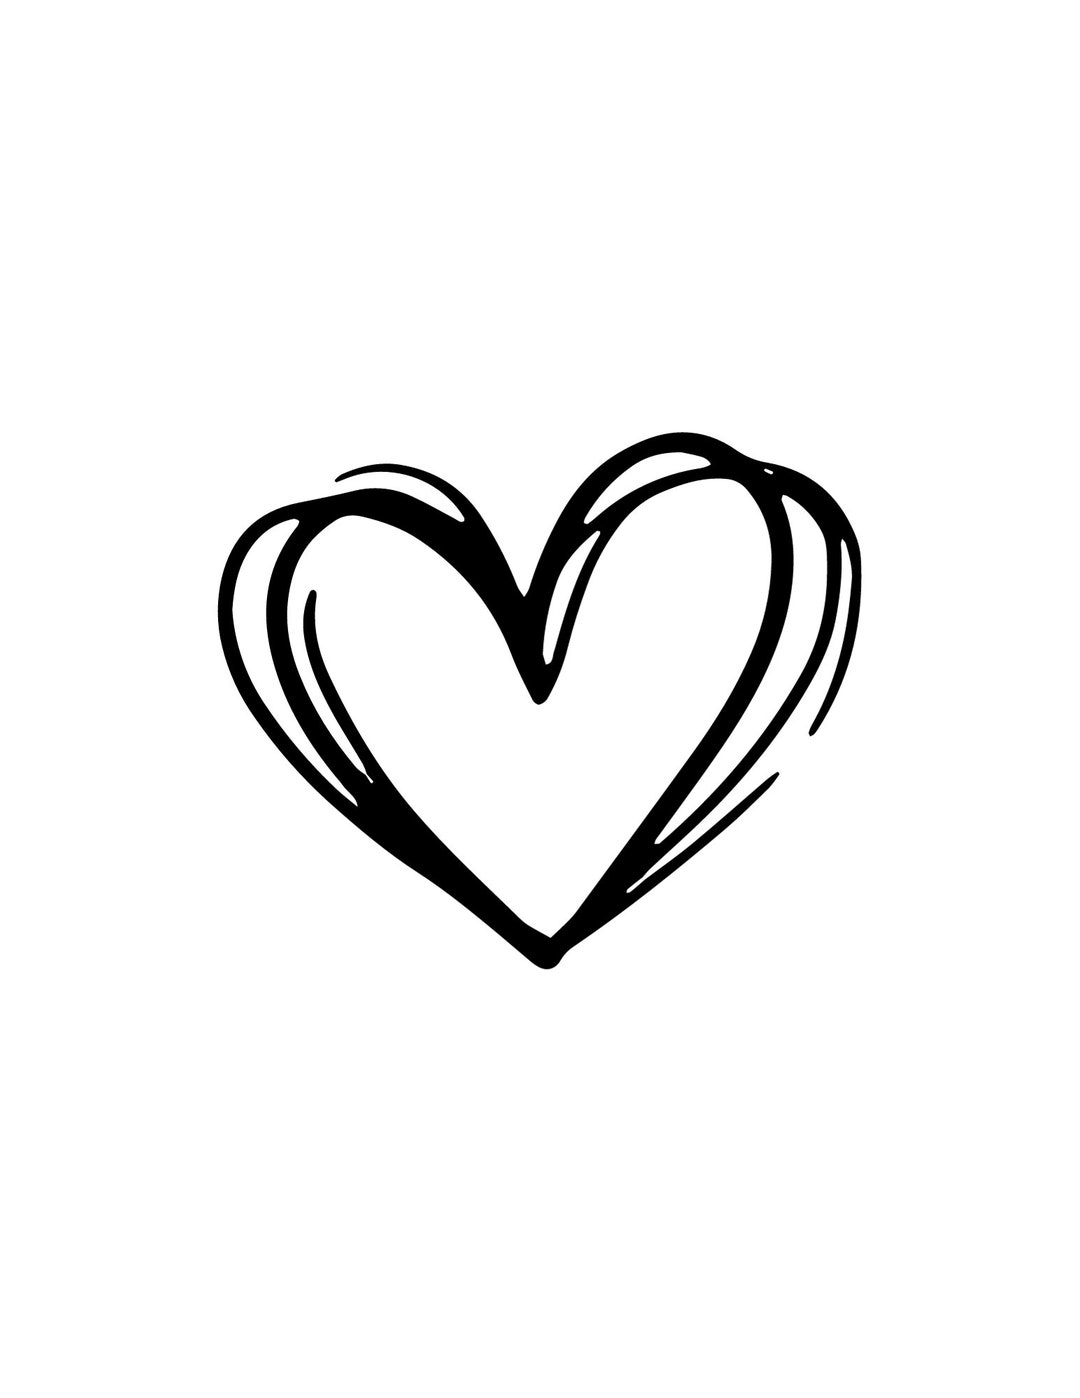 Heart Instant Downloads in Black & White SVG, PNG, Jpg Digital Download ...